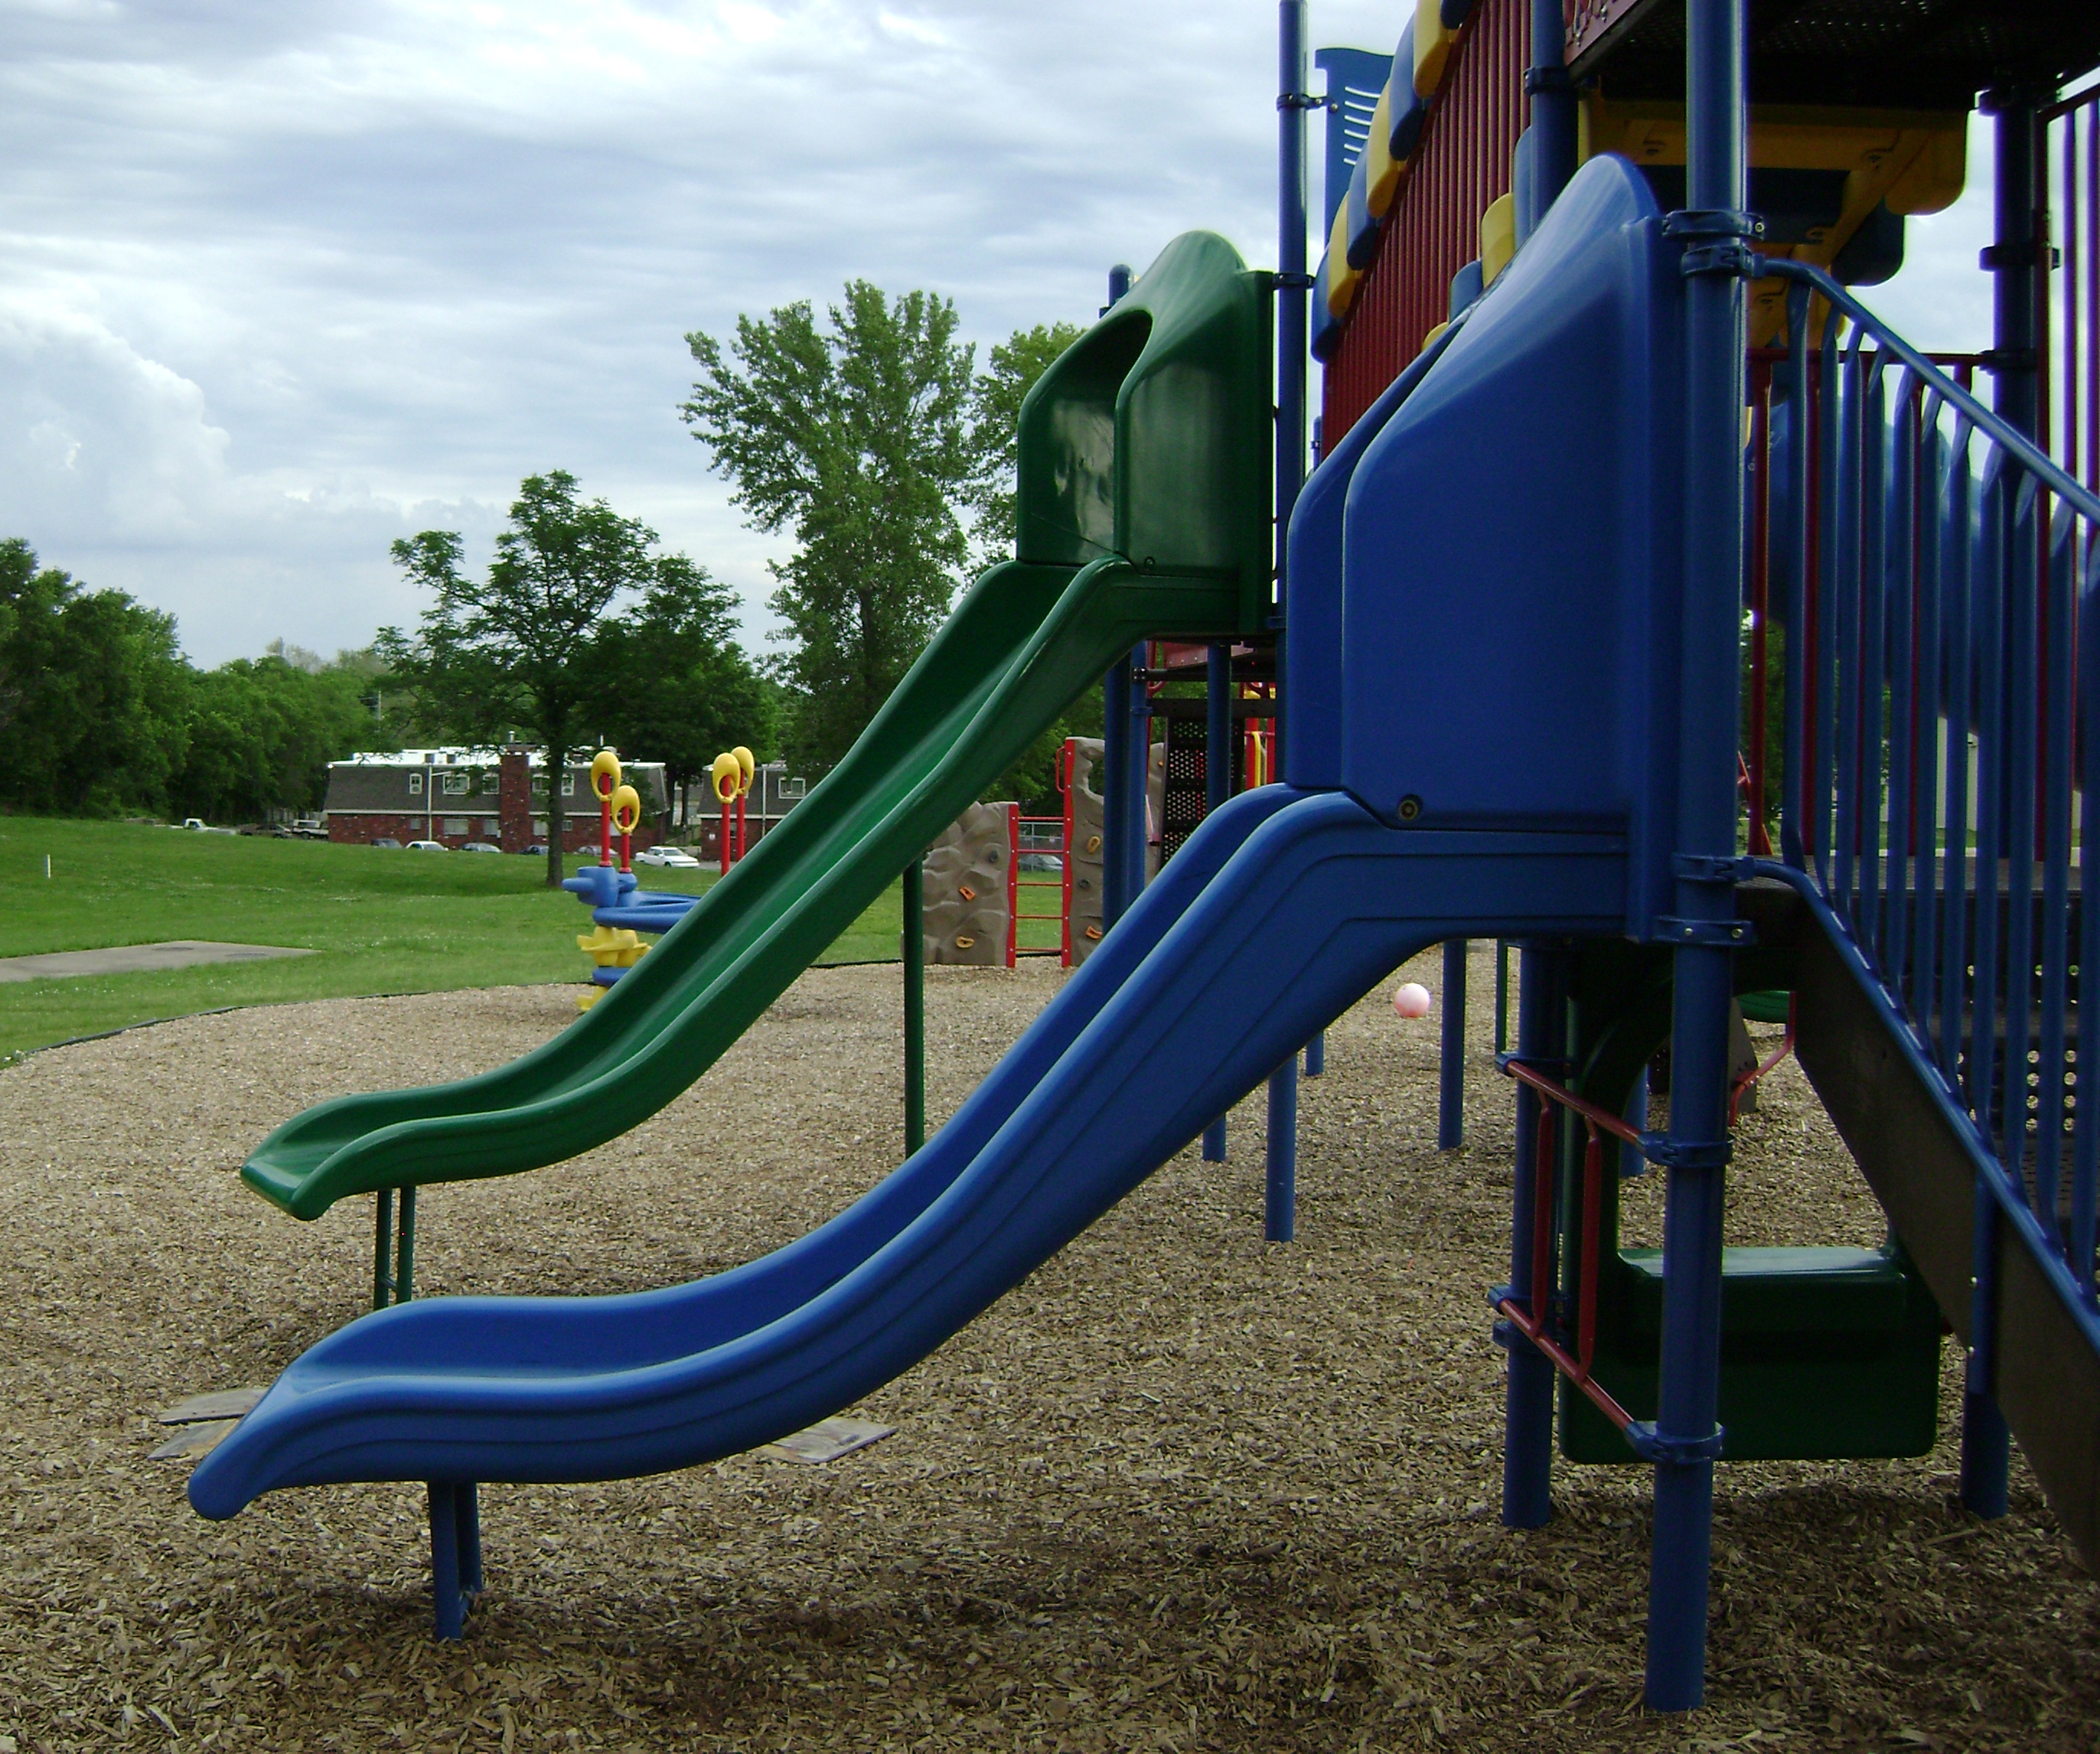 Playground, Blue, Children, Green, Kids, HQ Photo